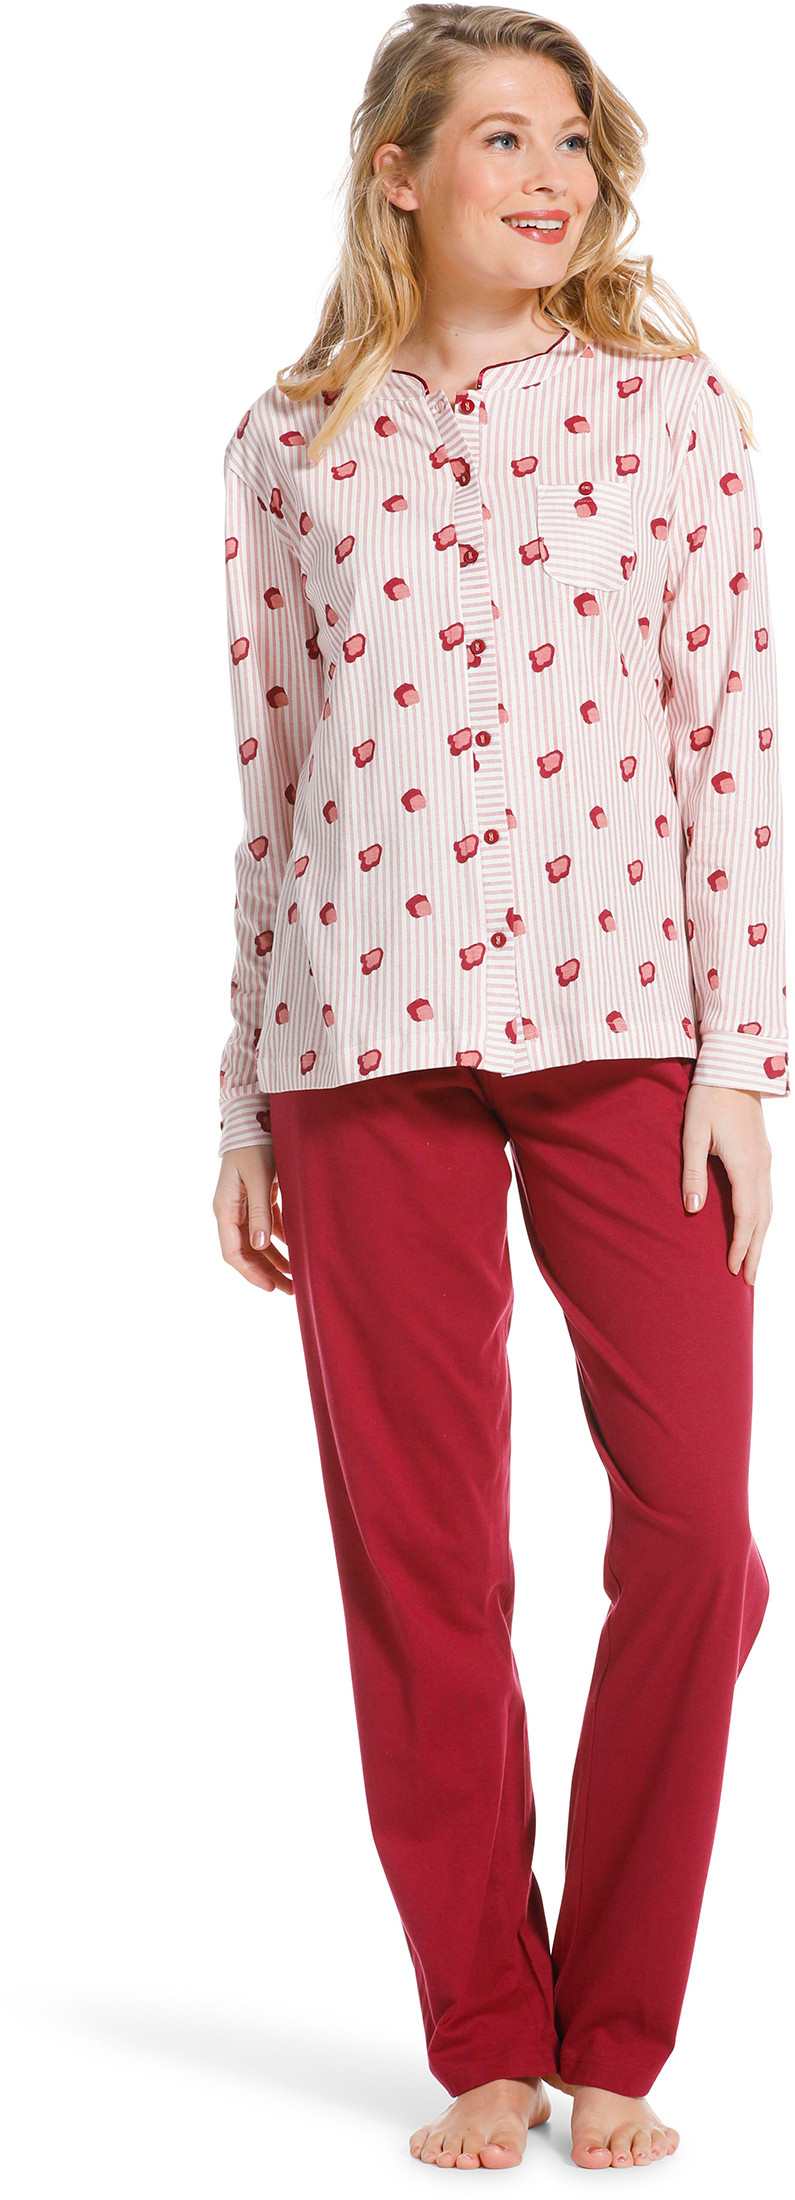 Pastunette doorknoop dames pyjama 20222-104-6-54